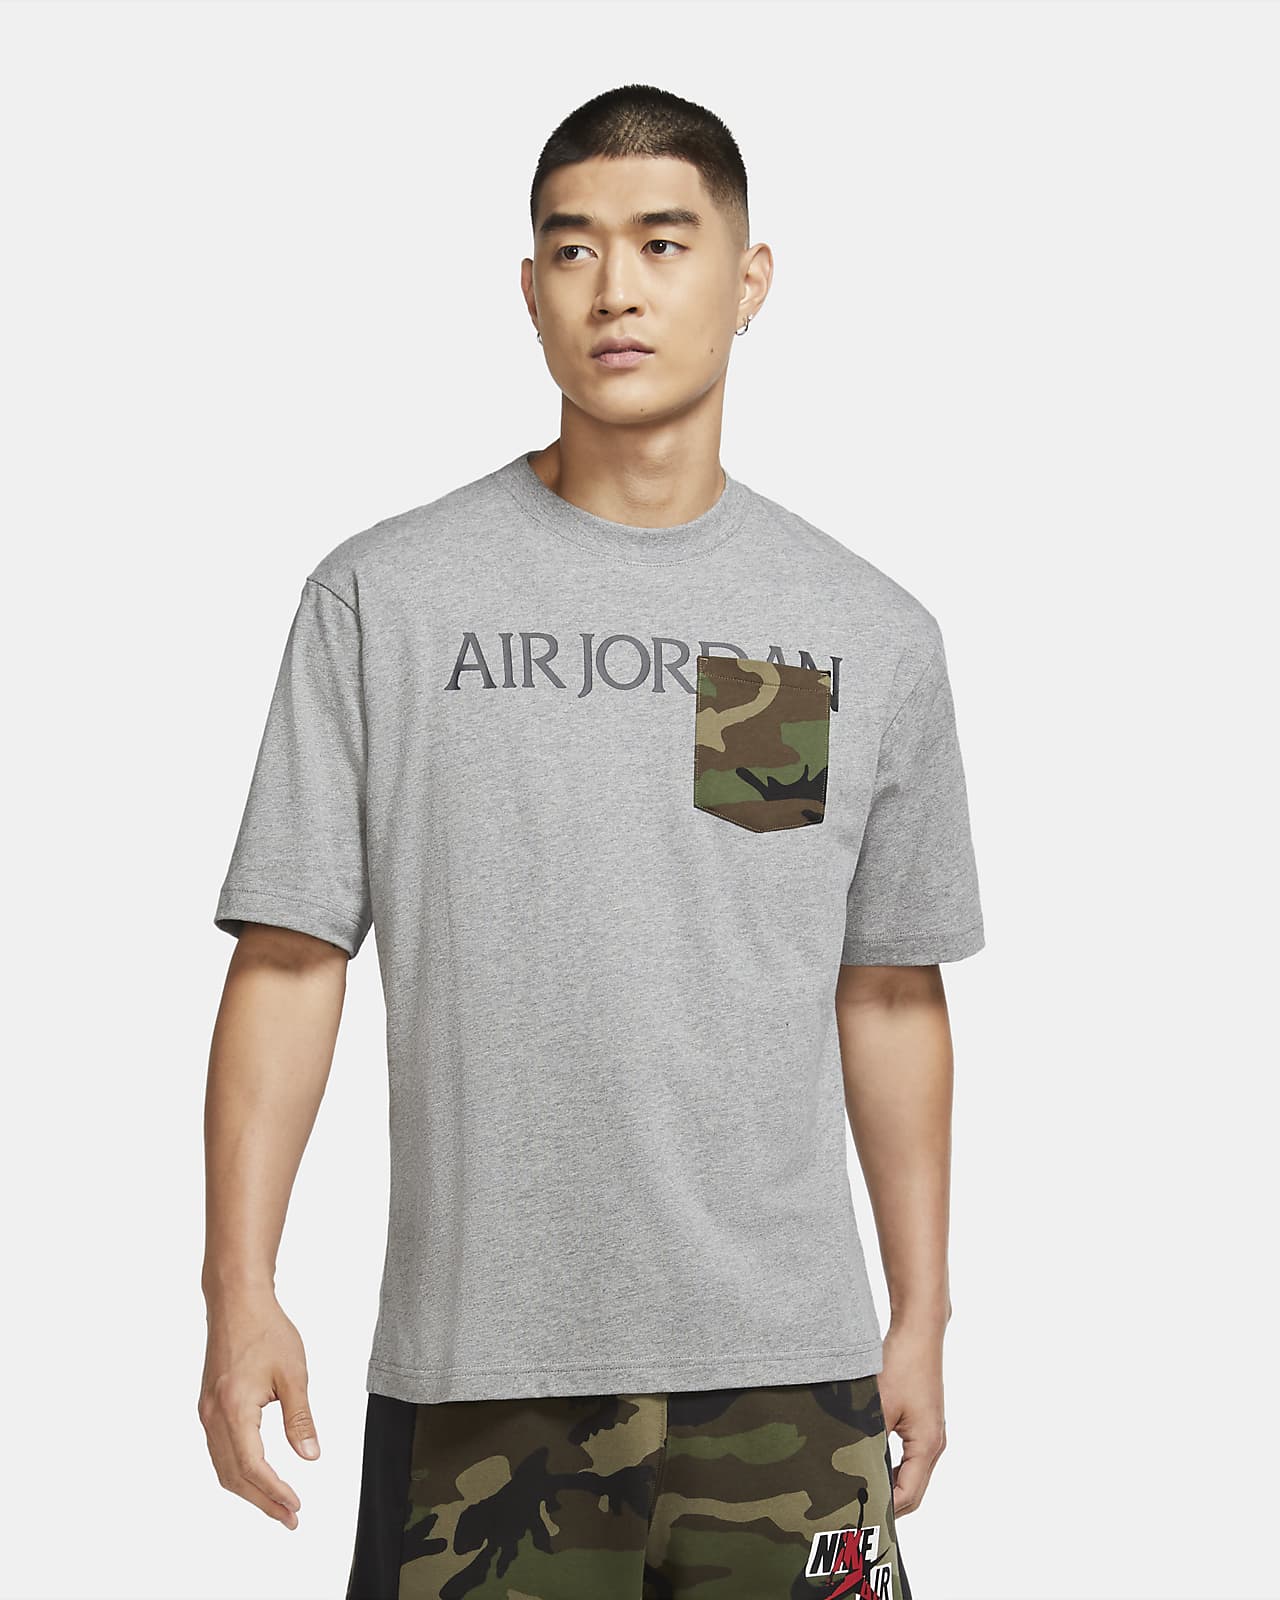 Nike公式 ジョーダン カモ マッシュアップ メンズ ポケット Tシャツ オンラインストア 通販サイト